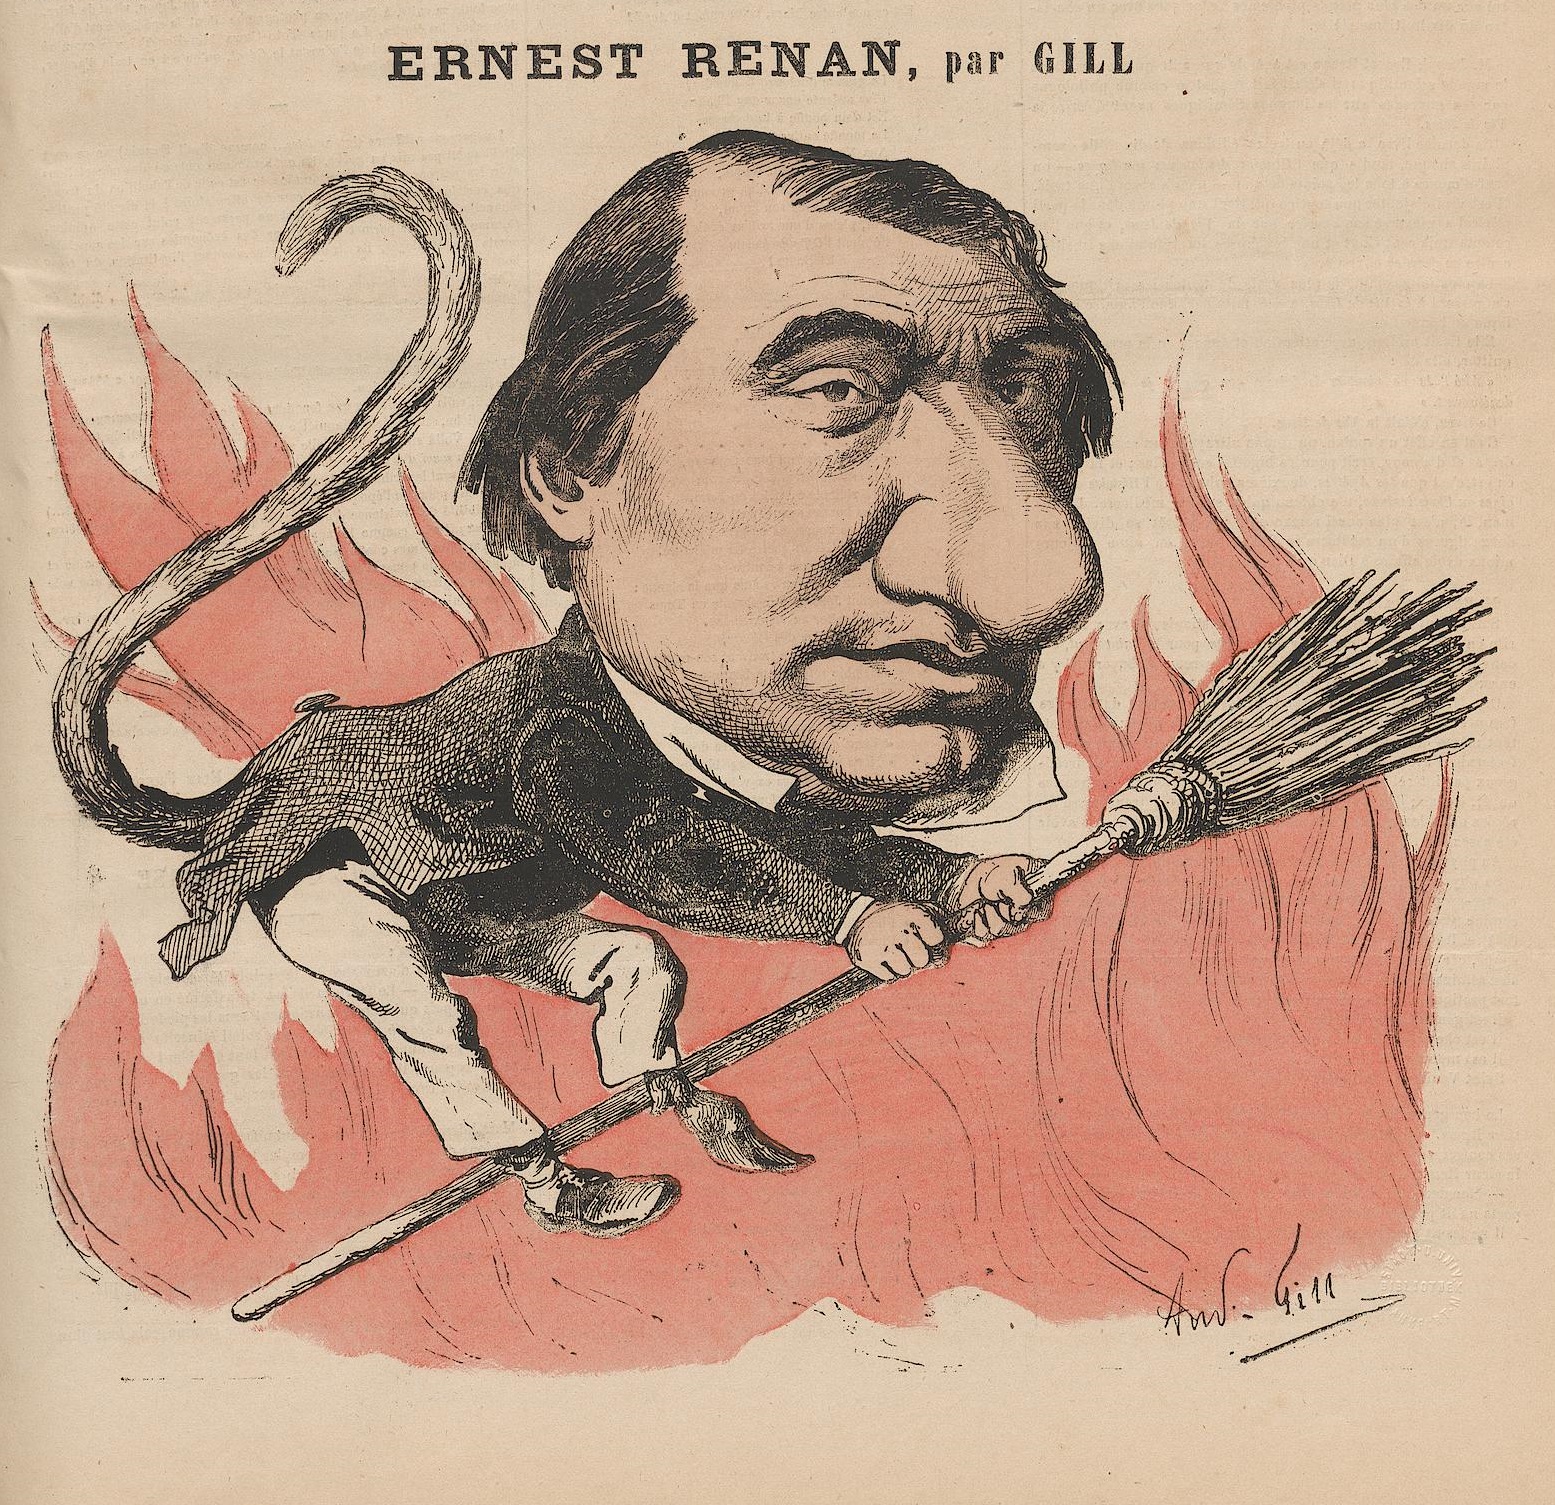 Ernest Renan, a botrányhős, az antikrisztus és a modern kor egyik legnagyobb történésze